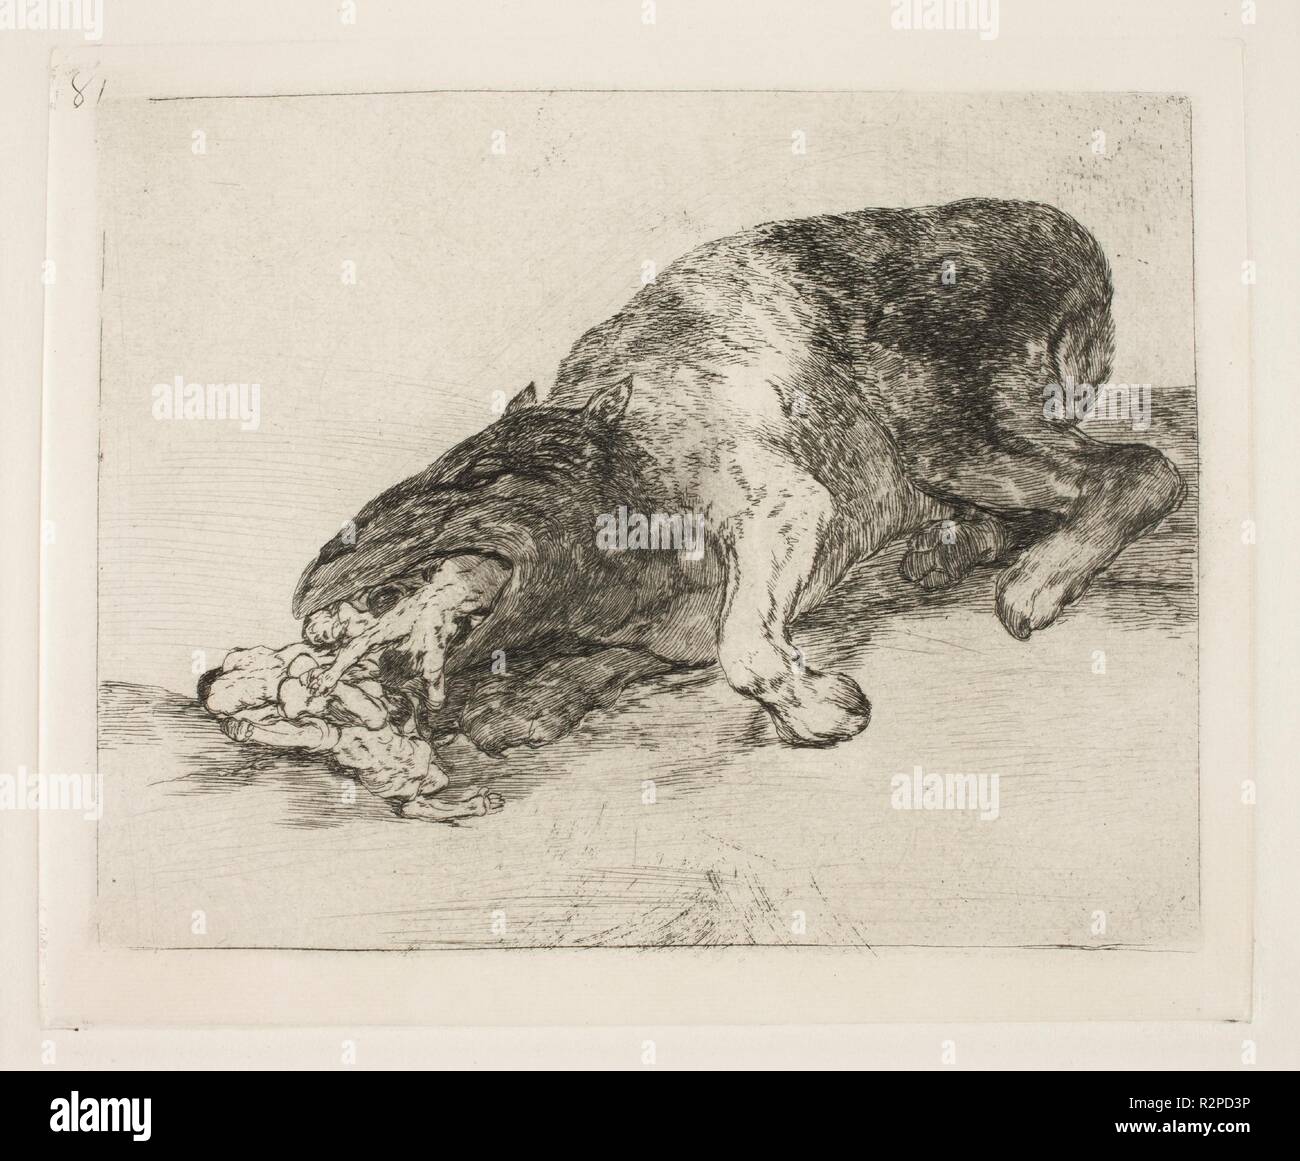 Francisco de Goya y Lucientes / 'Fierce Monster !". 1814 - 1815. L'eau-forte, burin, pointe sèche sur papier crème continue. Musée : Musée du Prado, Madrid, España. Banque D'Images